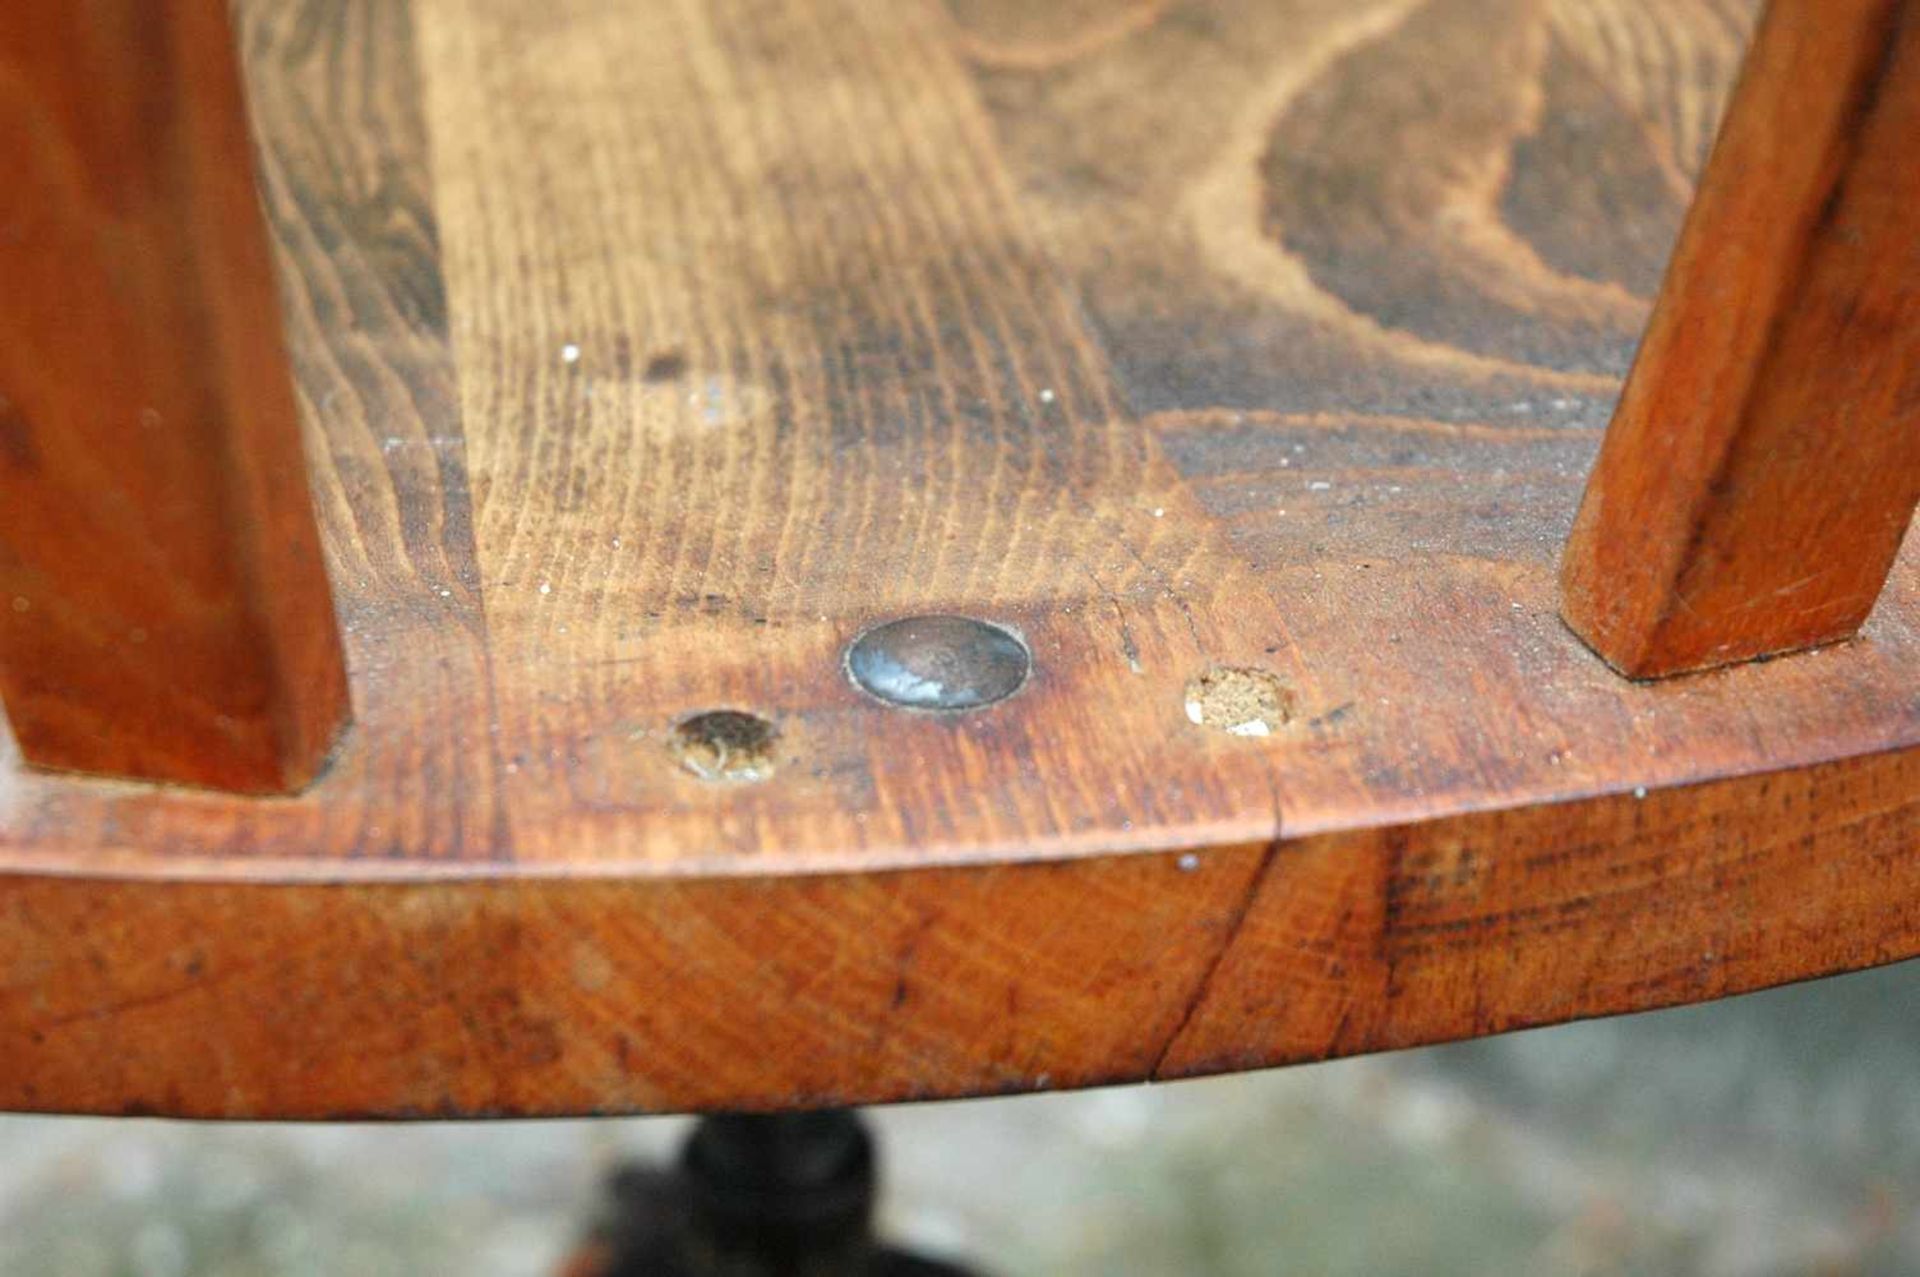 Holz-Schreibstischstuhl, „Der Federdreh“, Stoll, höhenverstellbar, eine Rückenleiste fehlt - Bild 3 aus 4